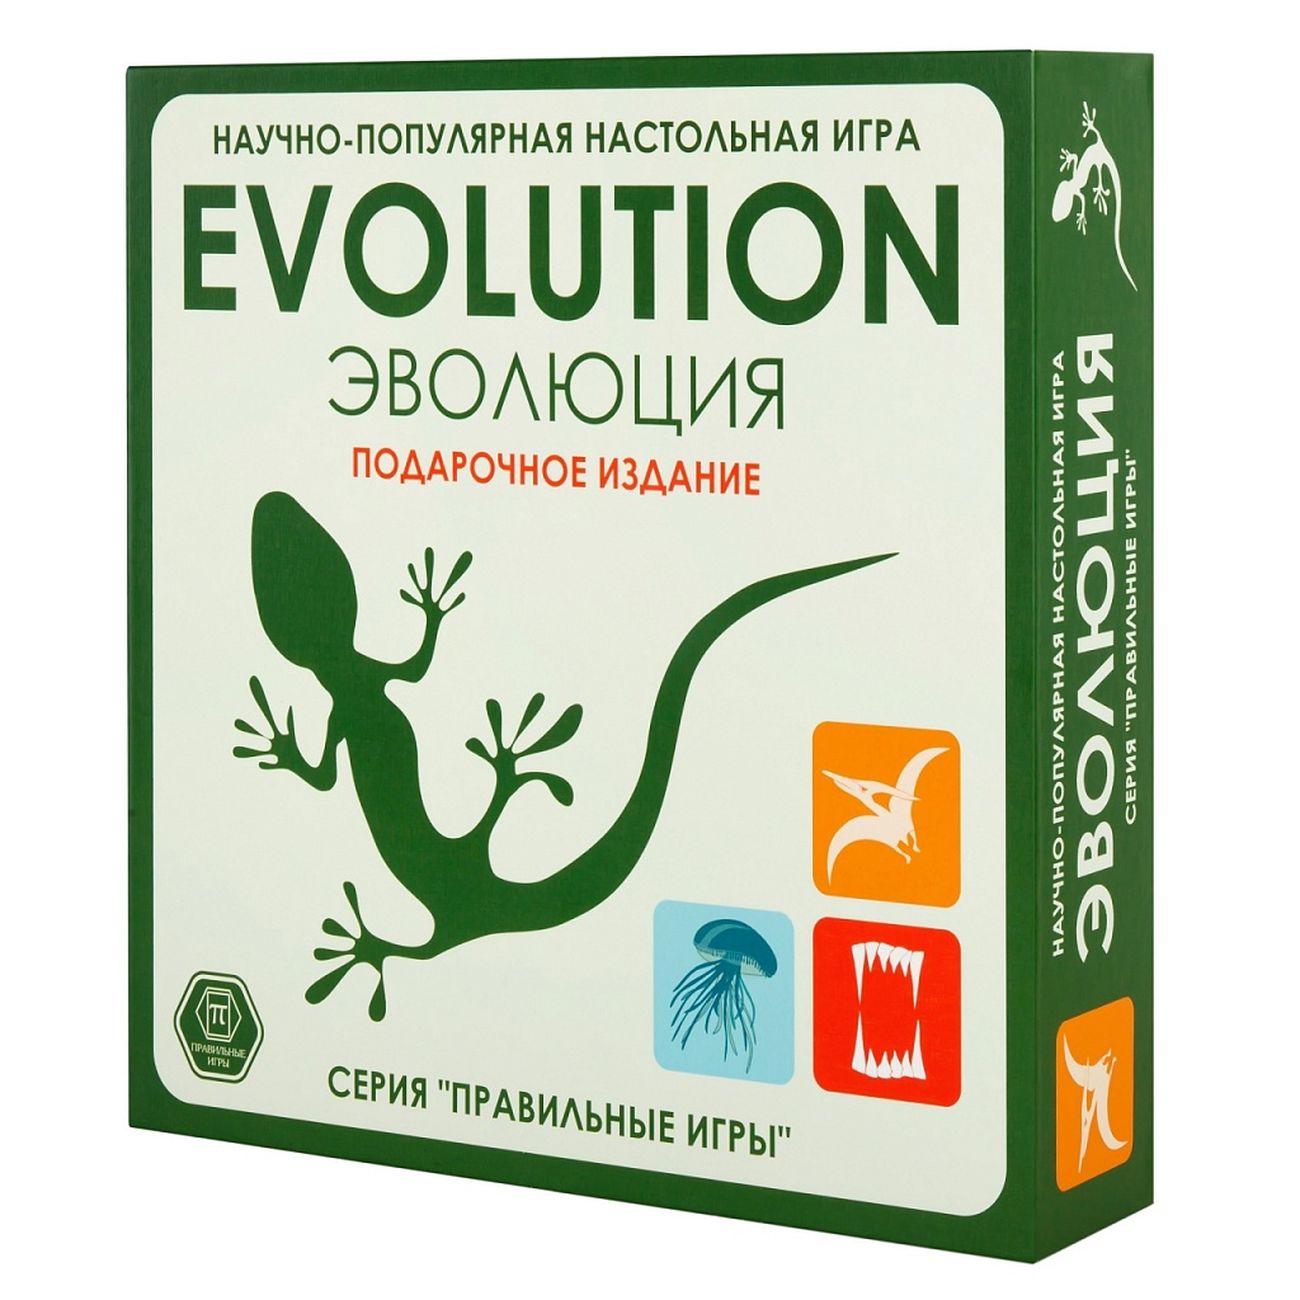 Эволюция. Подарочный набор», 3 выпуска игры + 18 новых карт, 13-01-04 наука о числах эволюция чисел в контексте толкования гадальных карт